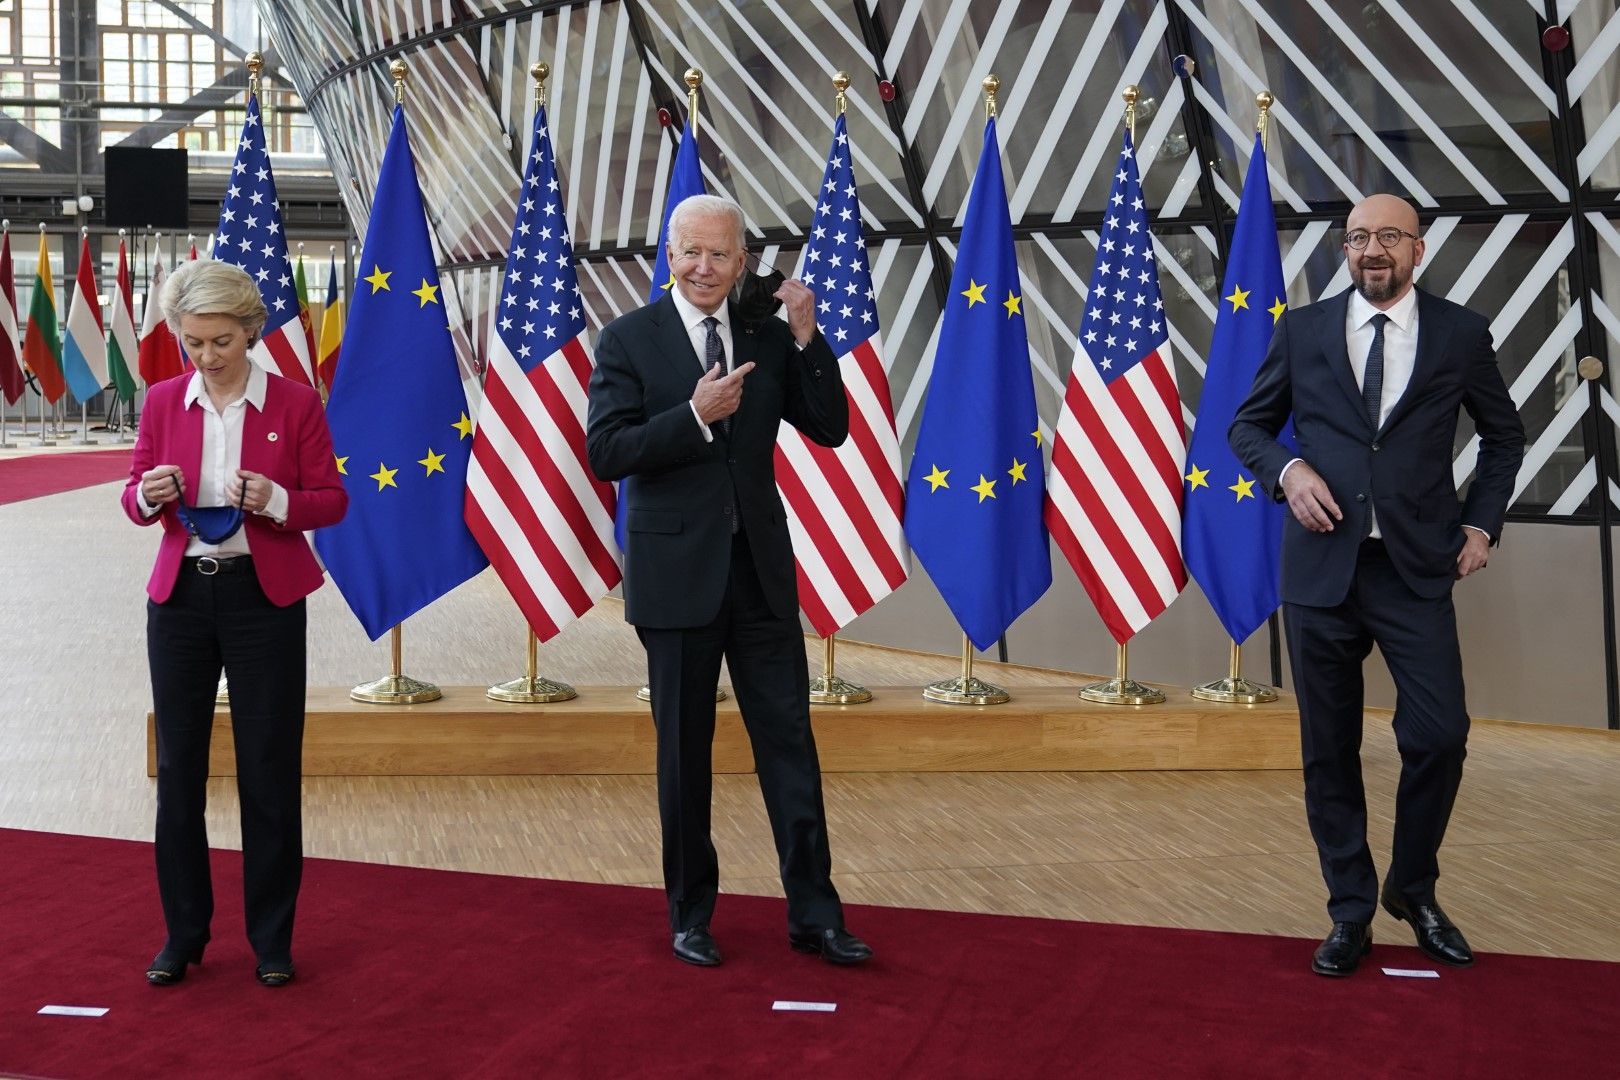 Урсула фонд дер Лайен, Джо Байдън и Шарл Мишел на срещата на върха ЕС - САЩ в Брюксел